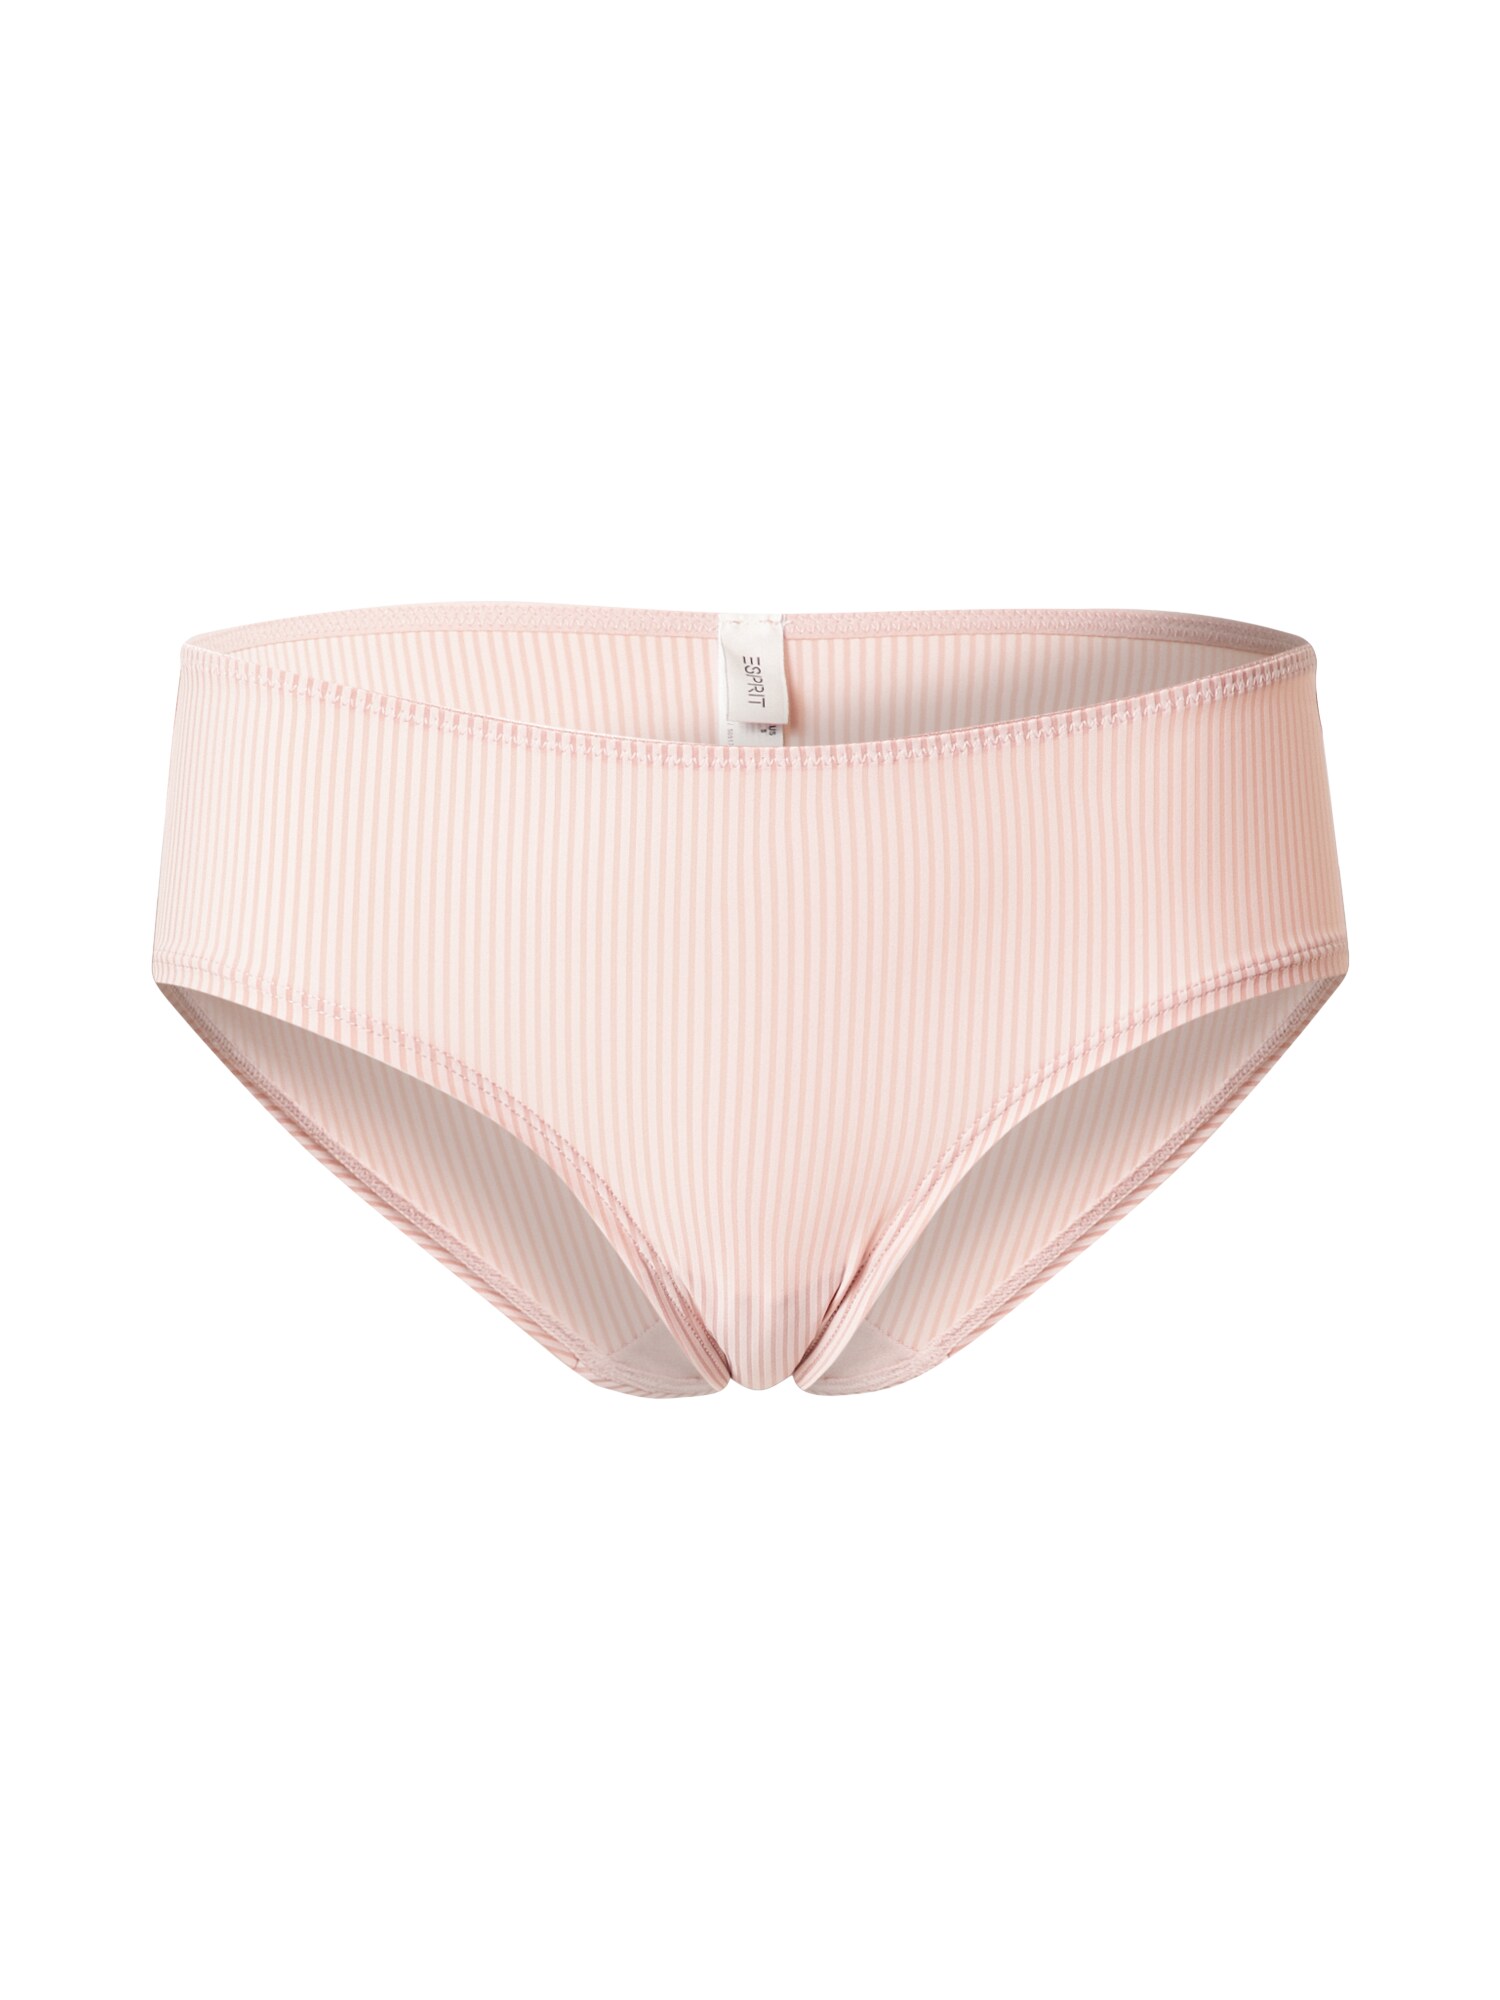 Esprit Bodywear Kelnaitės paaukštintu liemeniu ryškiai rožinė spalva